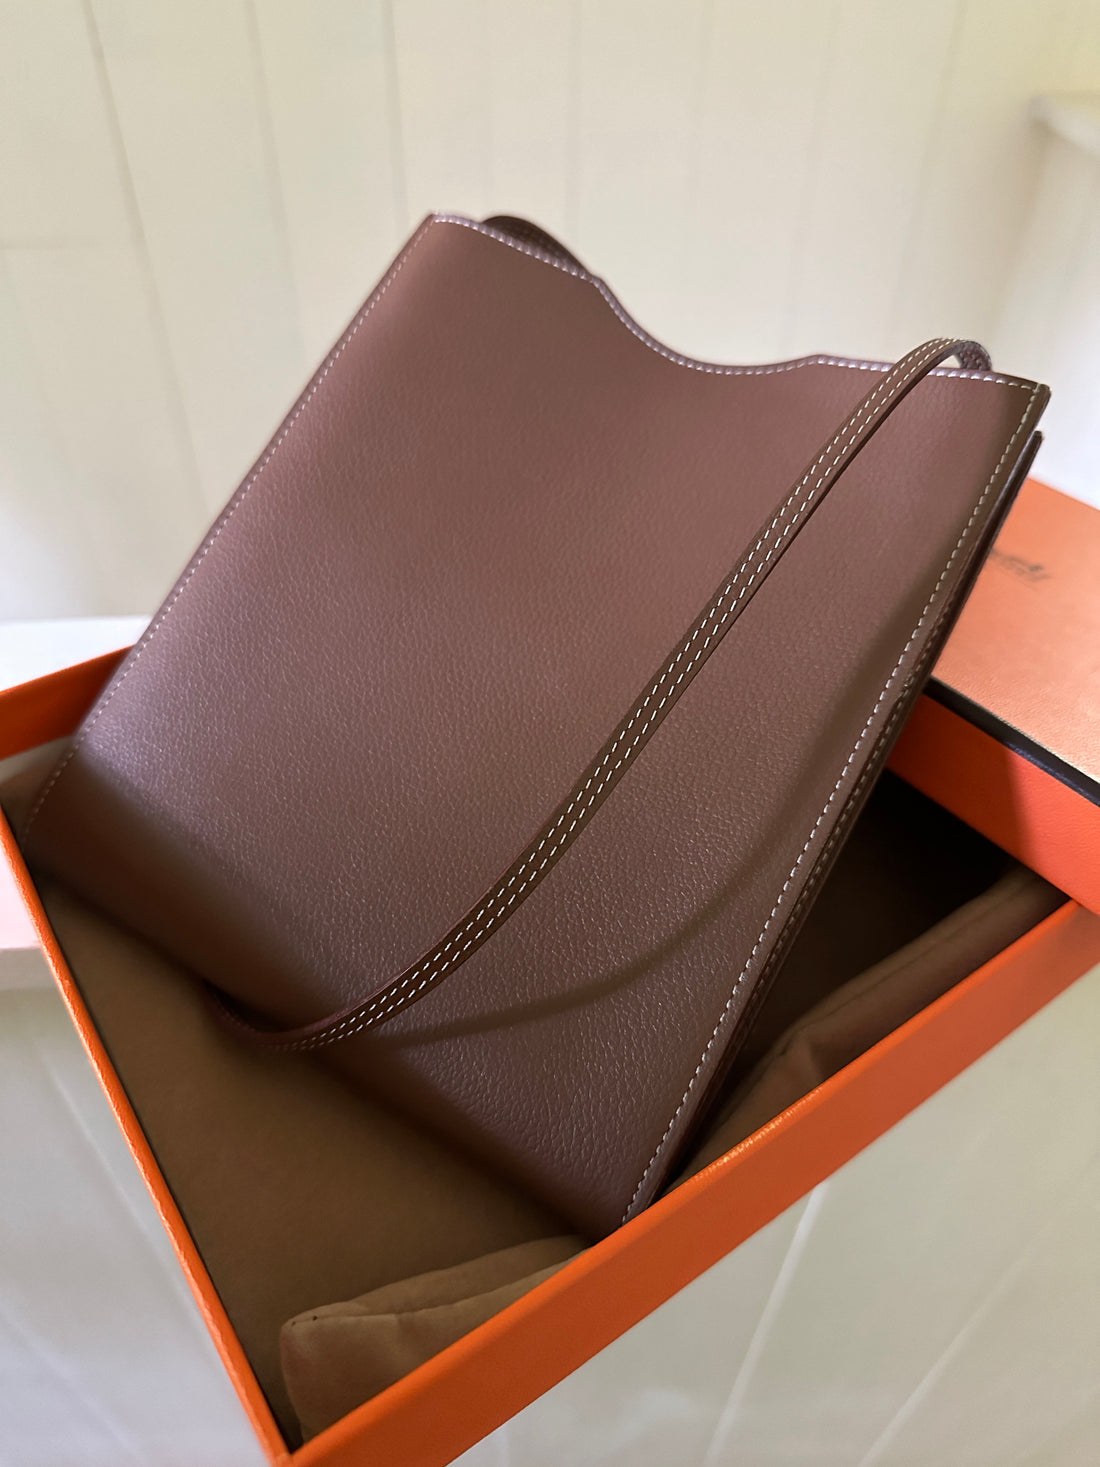 Hermès Trim 31 Hobo Bag – Handbag Social Club